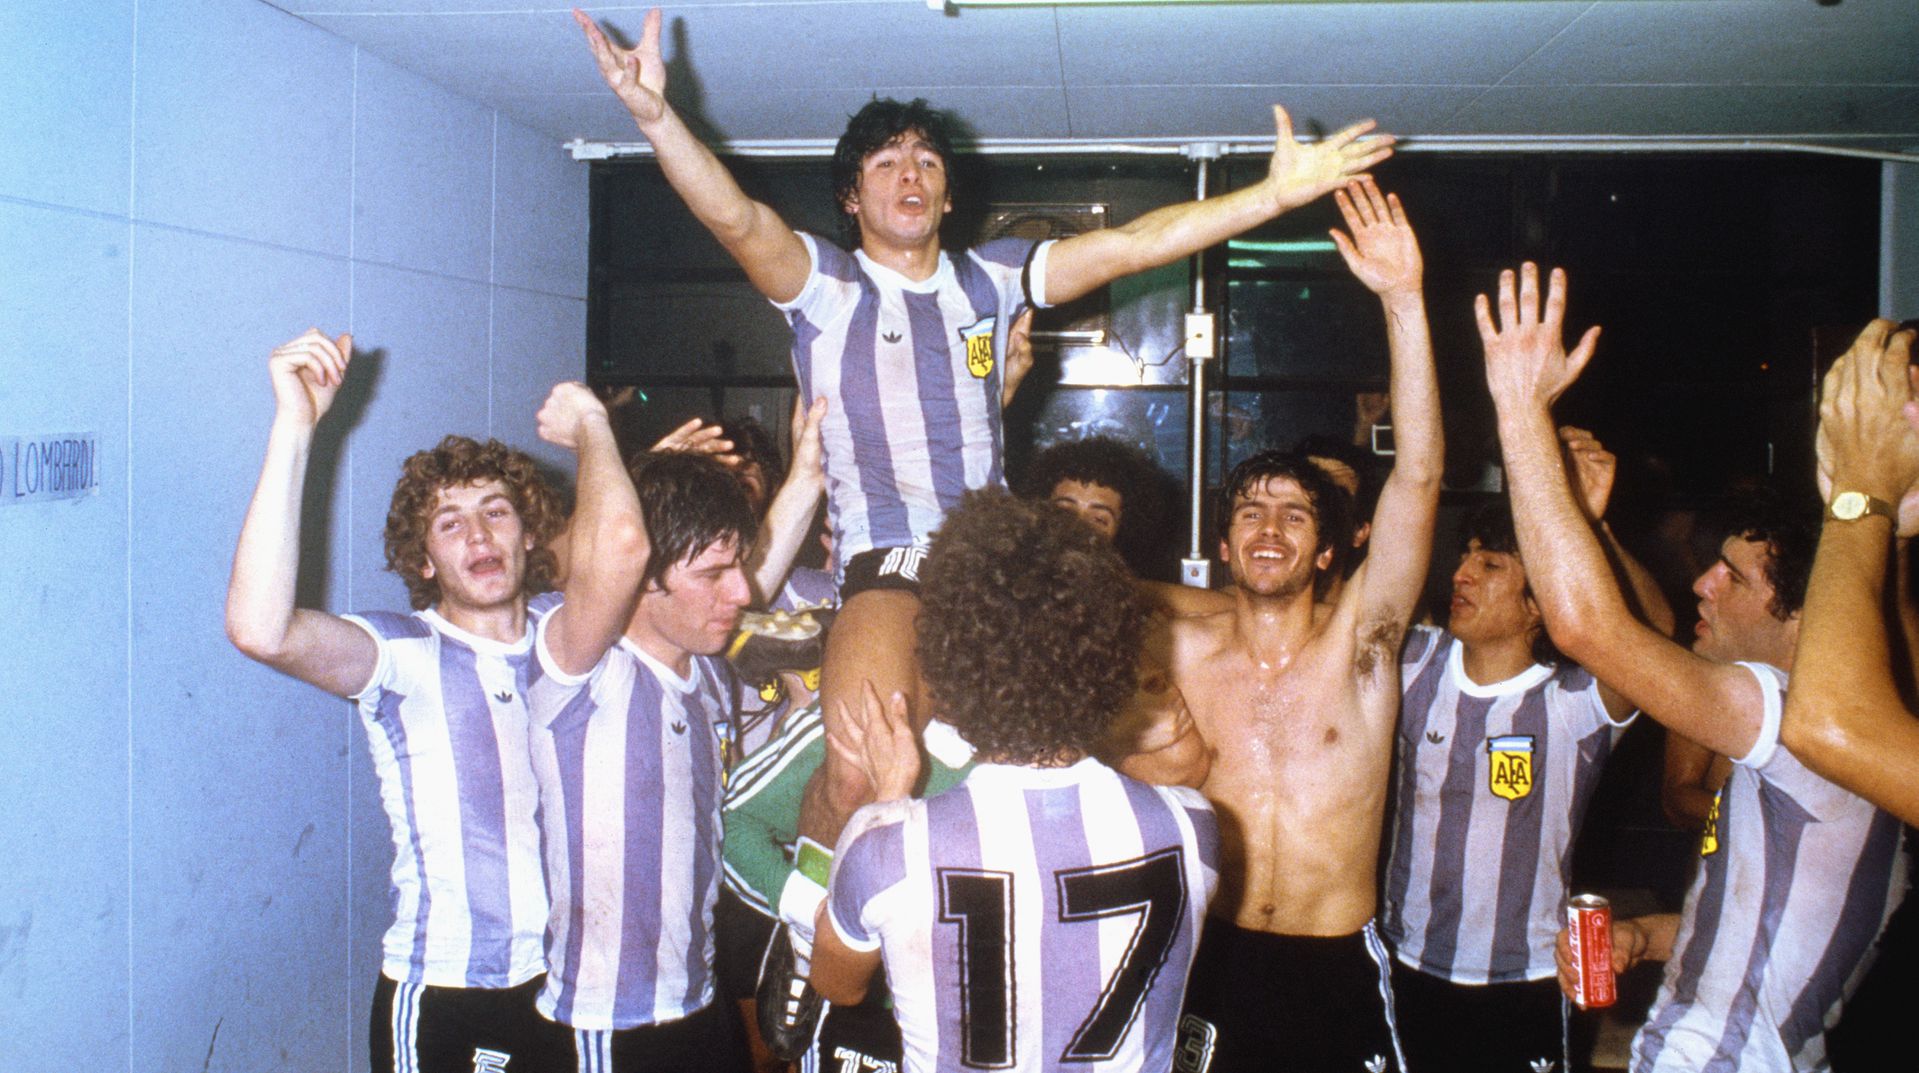 1979, az Argentin válogatott ifjúsági világbajnokságot nyer, amiben közvetett formában Bánkinak is szerepe volt. / Fotó: GettyImages